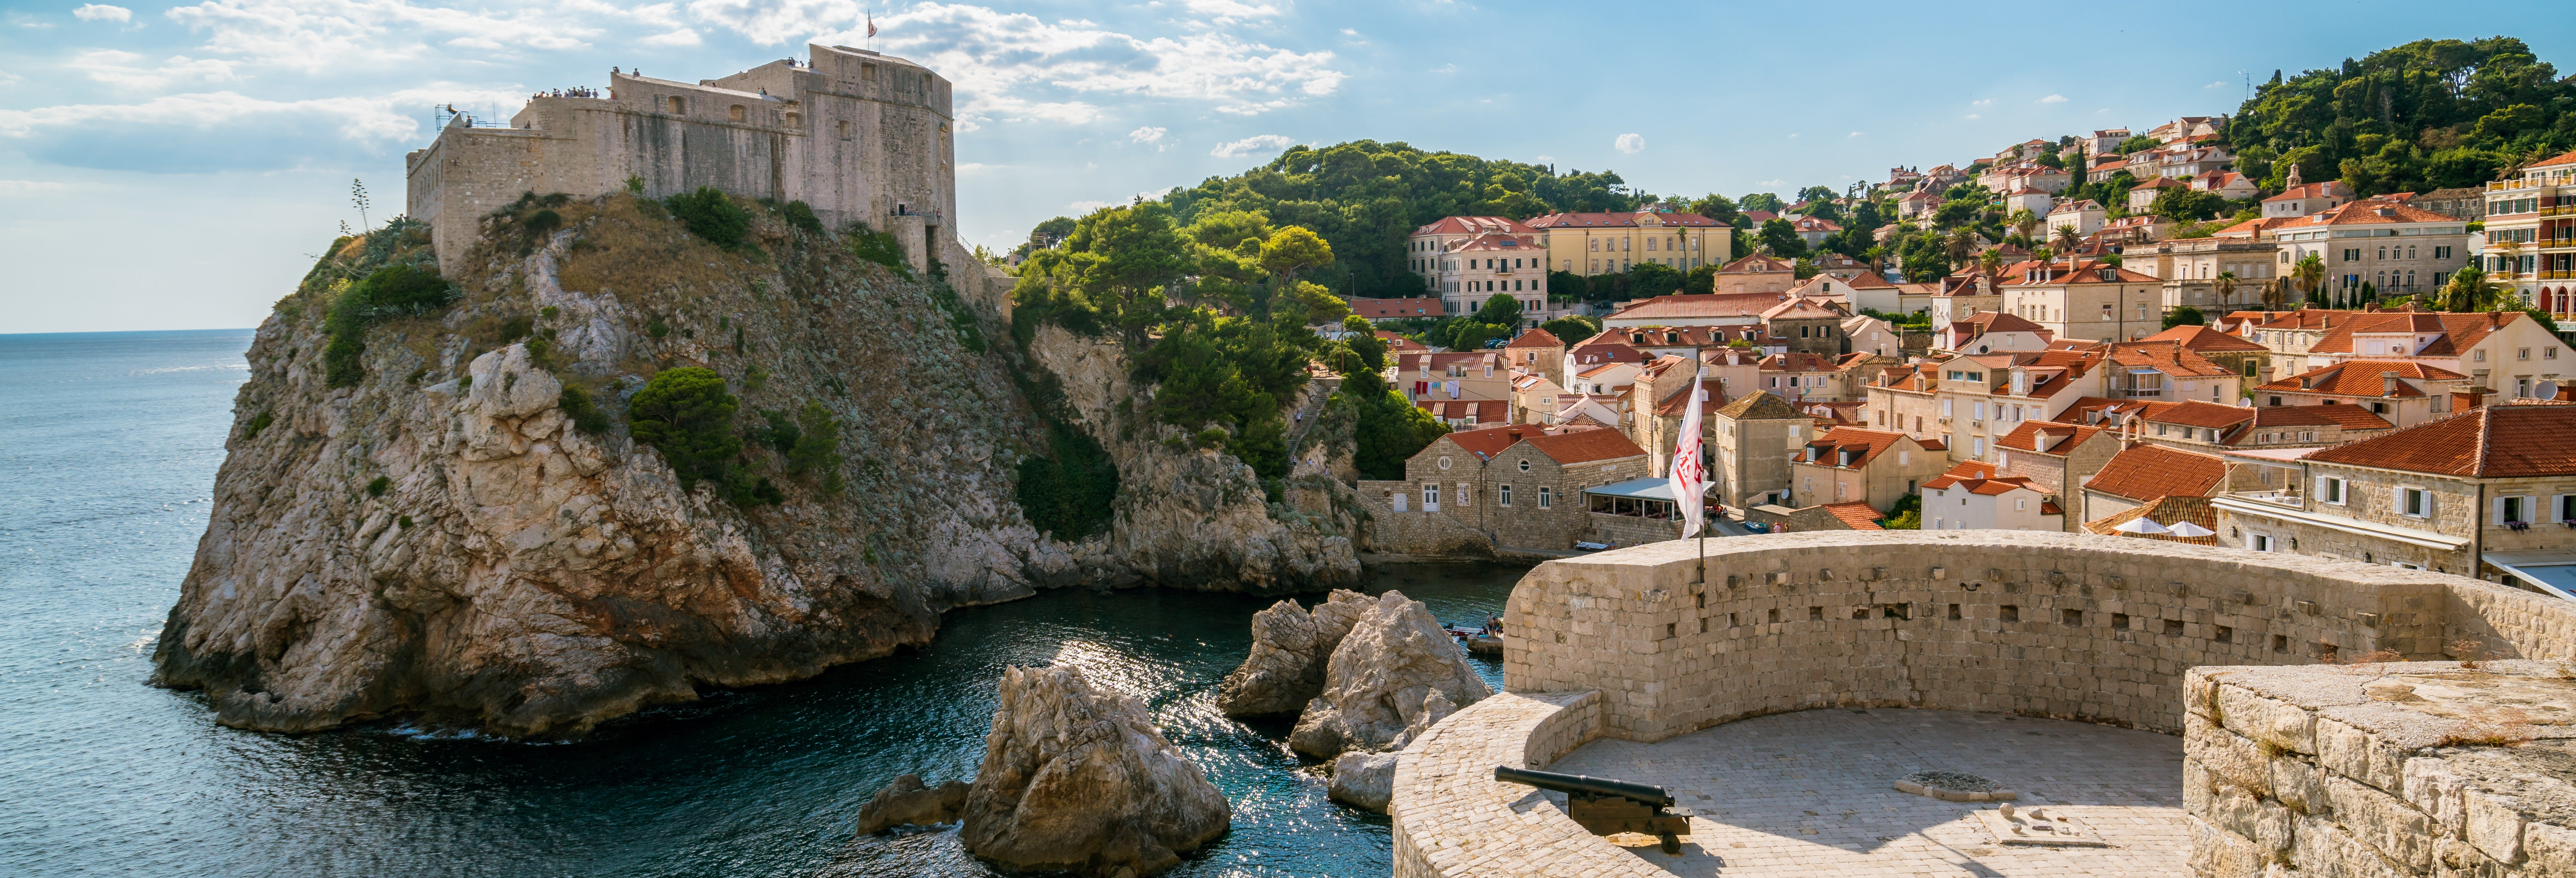 Visita guiada por Dubrovnik + Tour de Game of Thrones